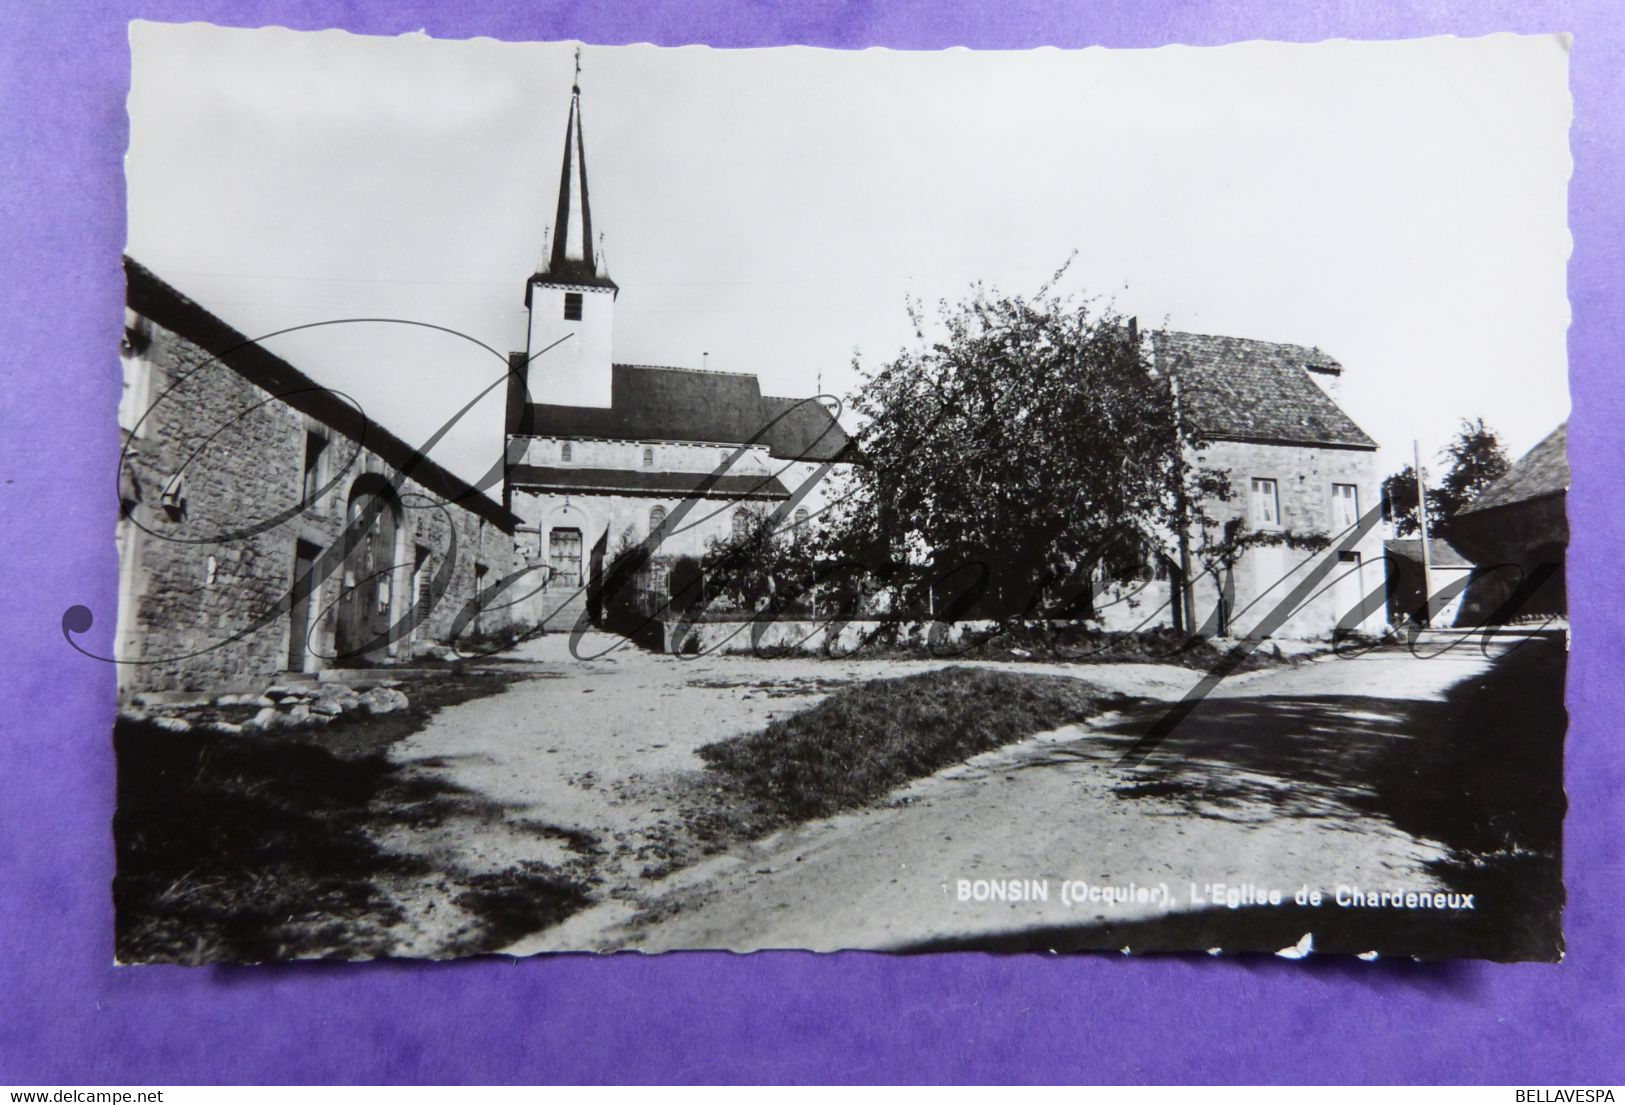 Bonsin ( Ocquier ) - L'Eglise De Chardeneux - Somme-Leuze